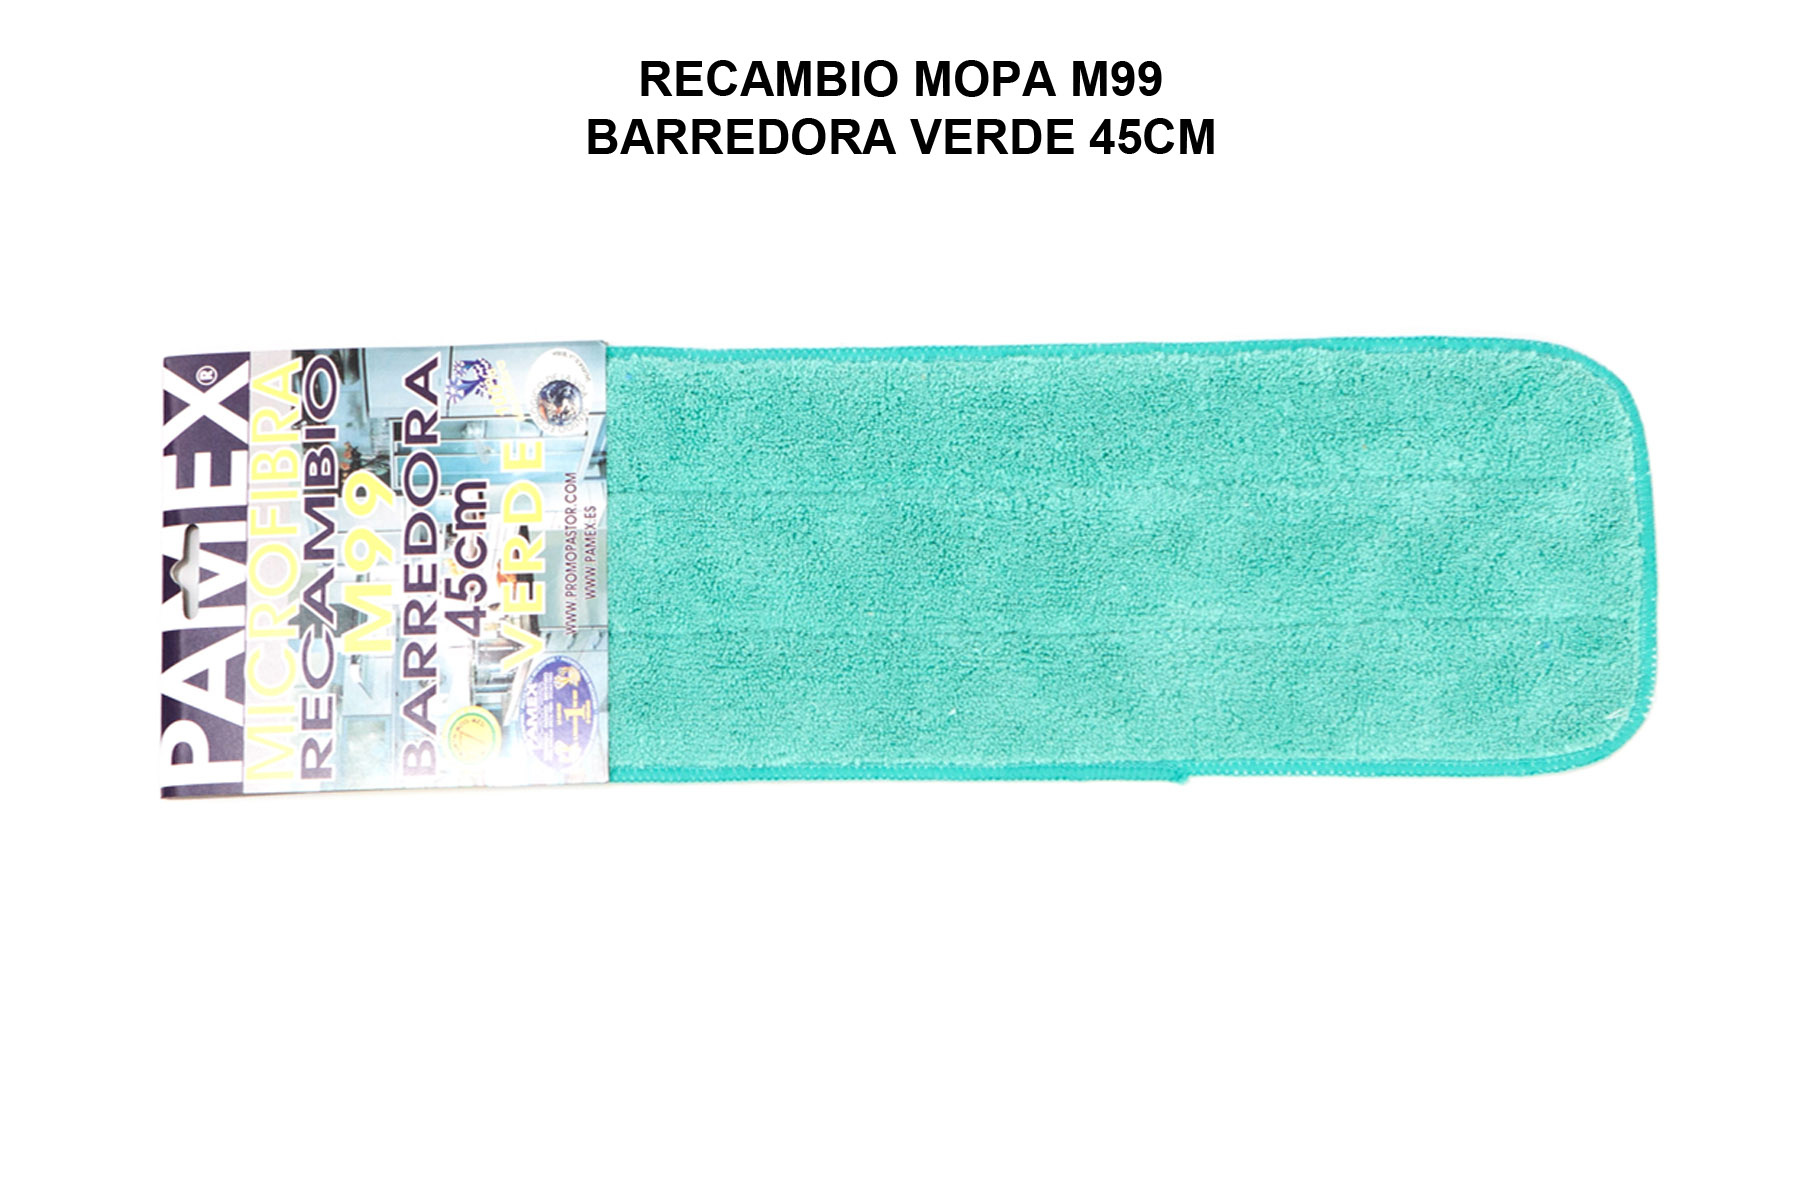 RECAMBIO MOPA M99 BARREDORA VERDE 45CM